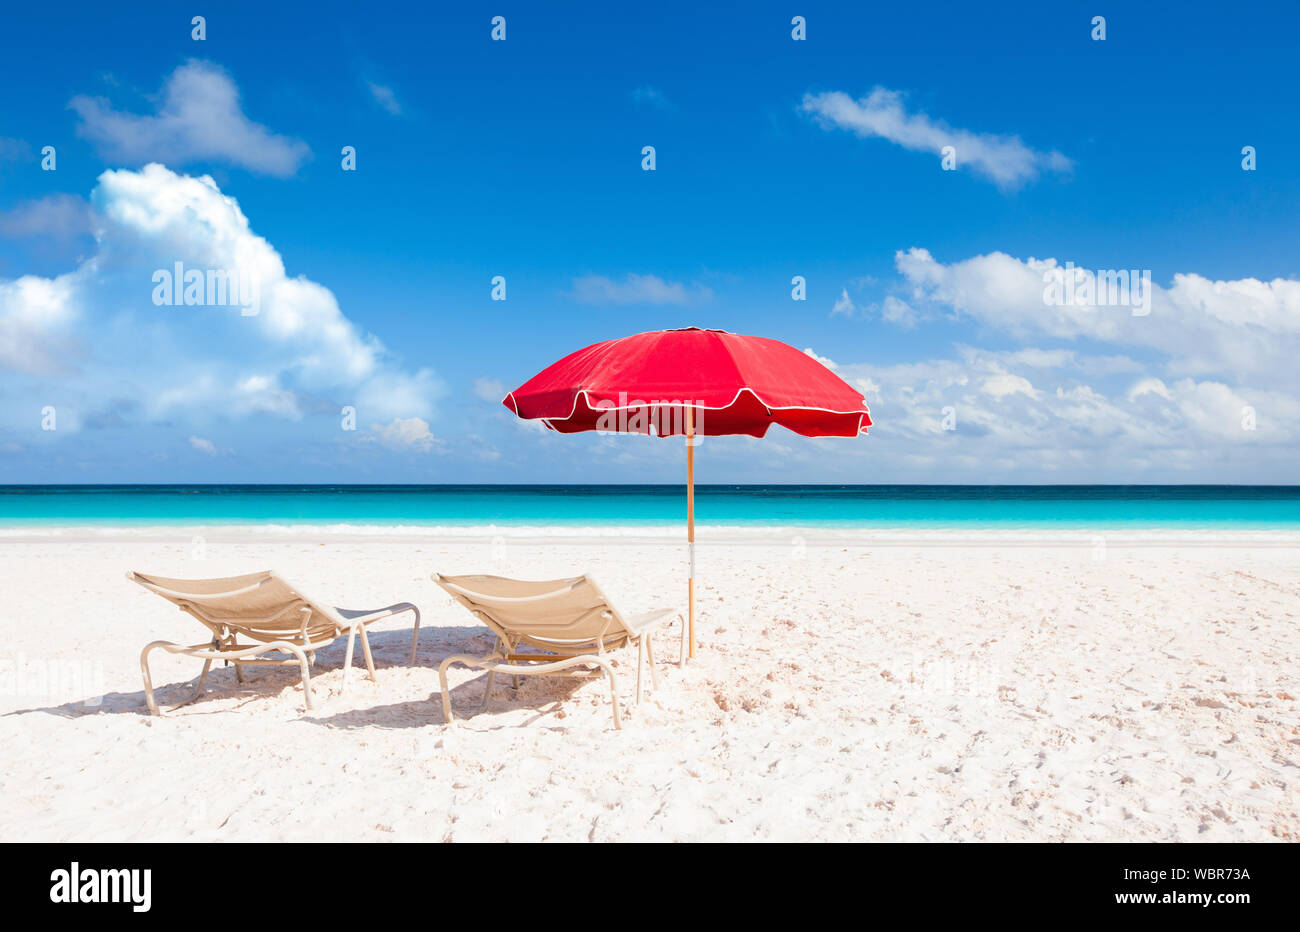 Escena de verano en la playa con sombrilla roja Foto de stock